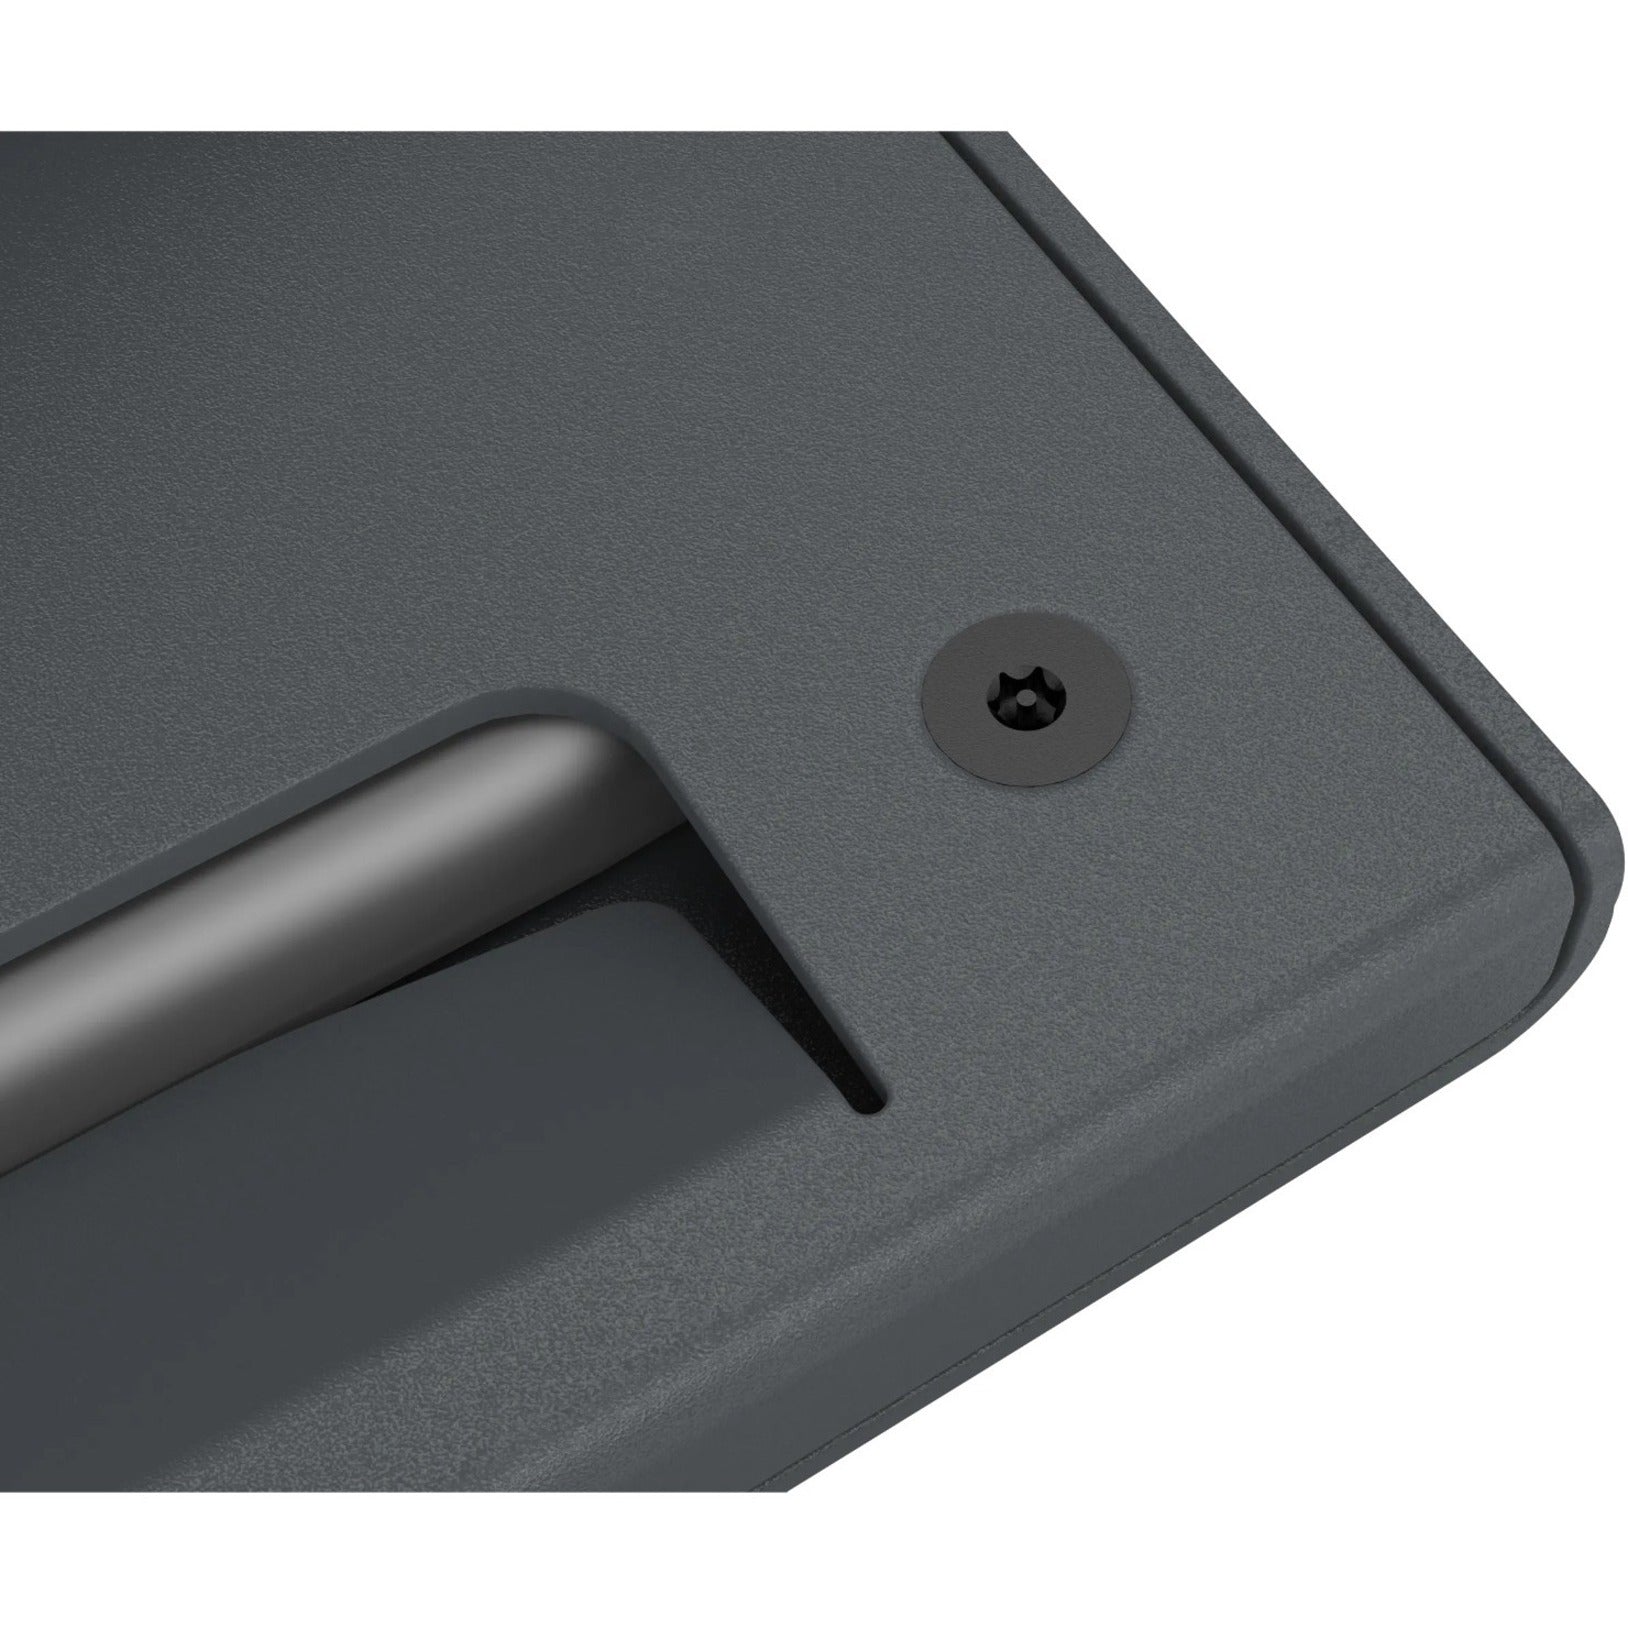 Heckler Design H601-BG Zoom Rooms Console for iPad, Black Gray - Fingerprint Resistant, Theft Resistant, Tamper Resistant, Kensington Security Slot